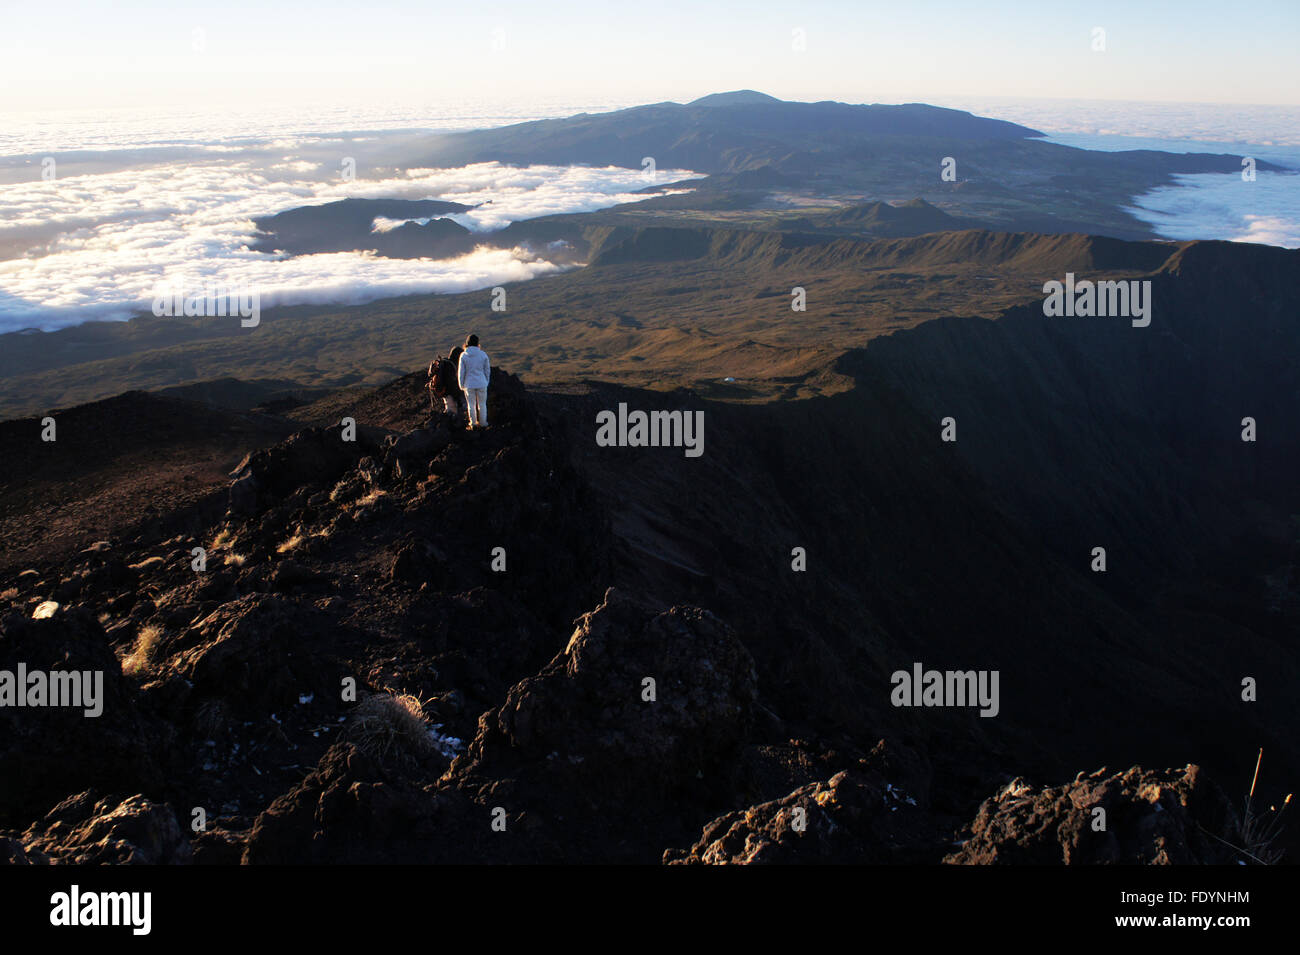 Les grimpeurs en ordre décroissant de sommet de Piton des Neiges, plus haut Mtn. sur l'île de La Réunion, France Banque D'Images